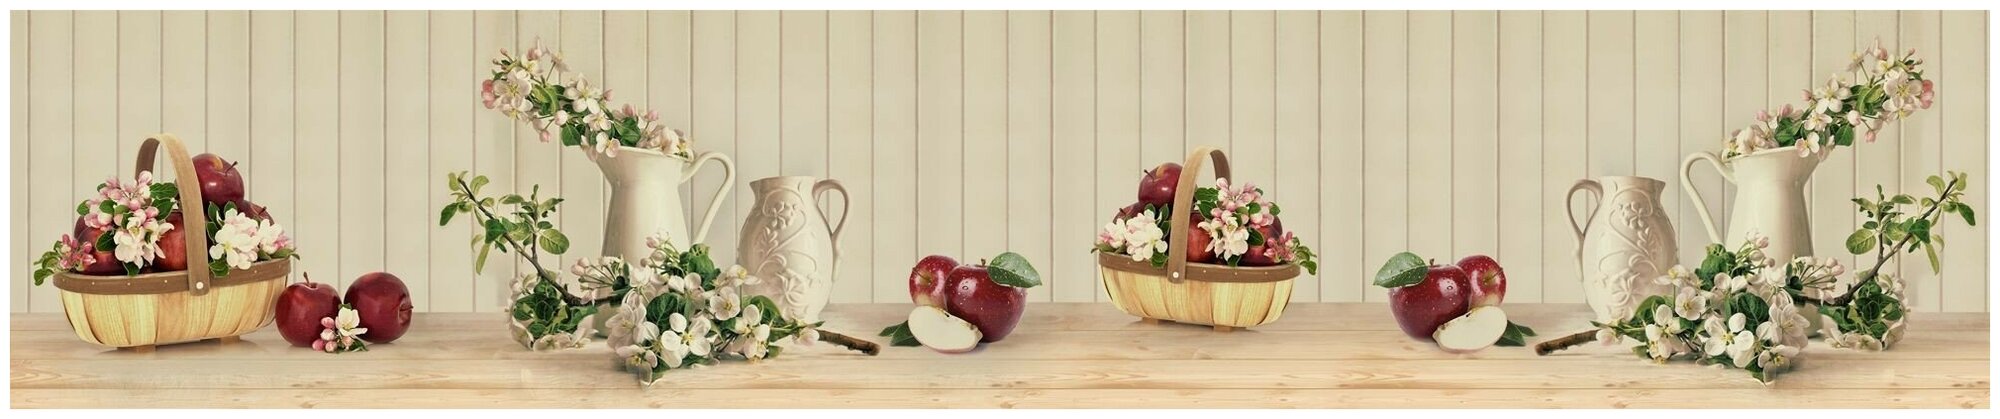 Фартук для кухни из АБС пластика 3000*600*1,5мм. Кухонный фартук ABS с фотопечатью "Натюрморт с яблоками"